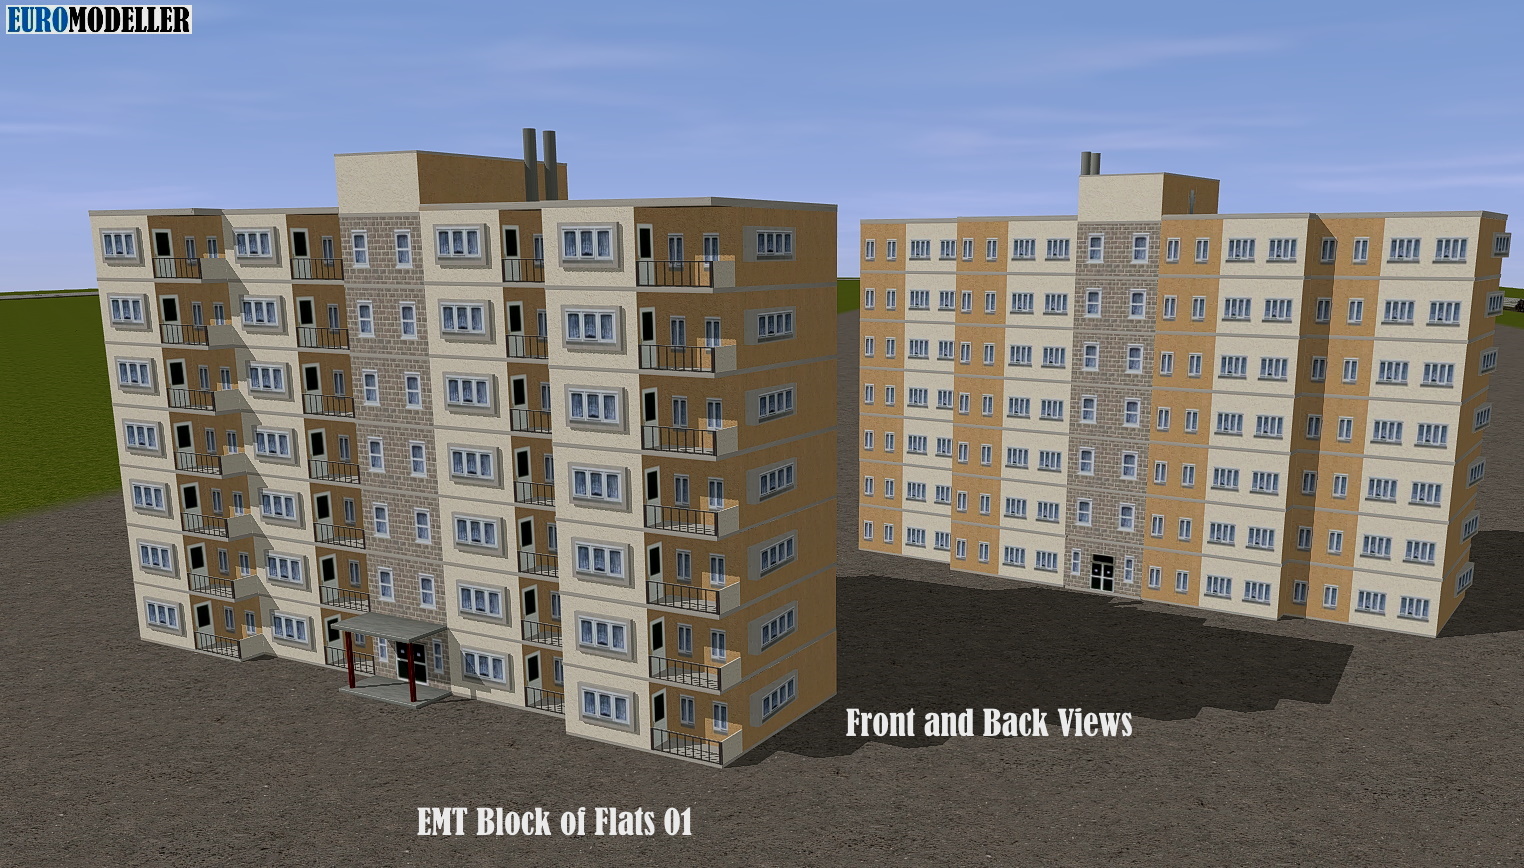 EMT Block of Flats 01